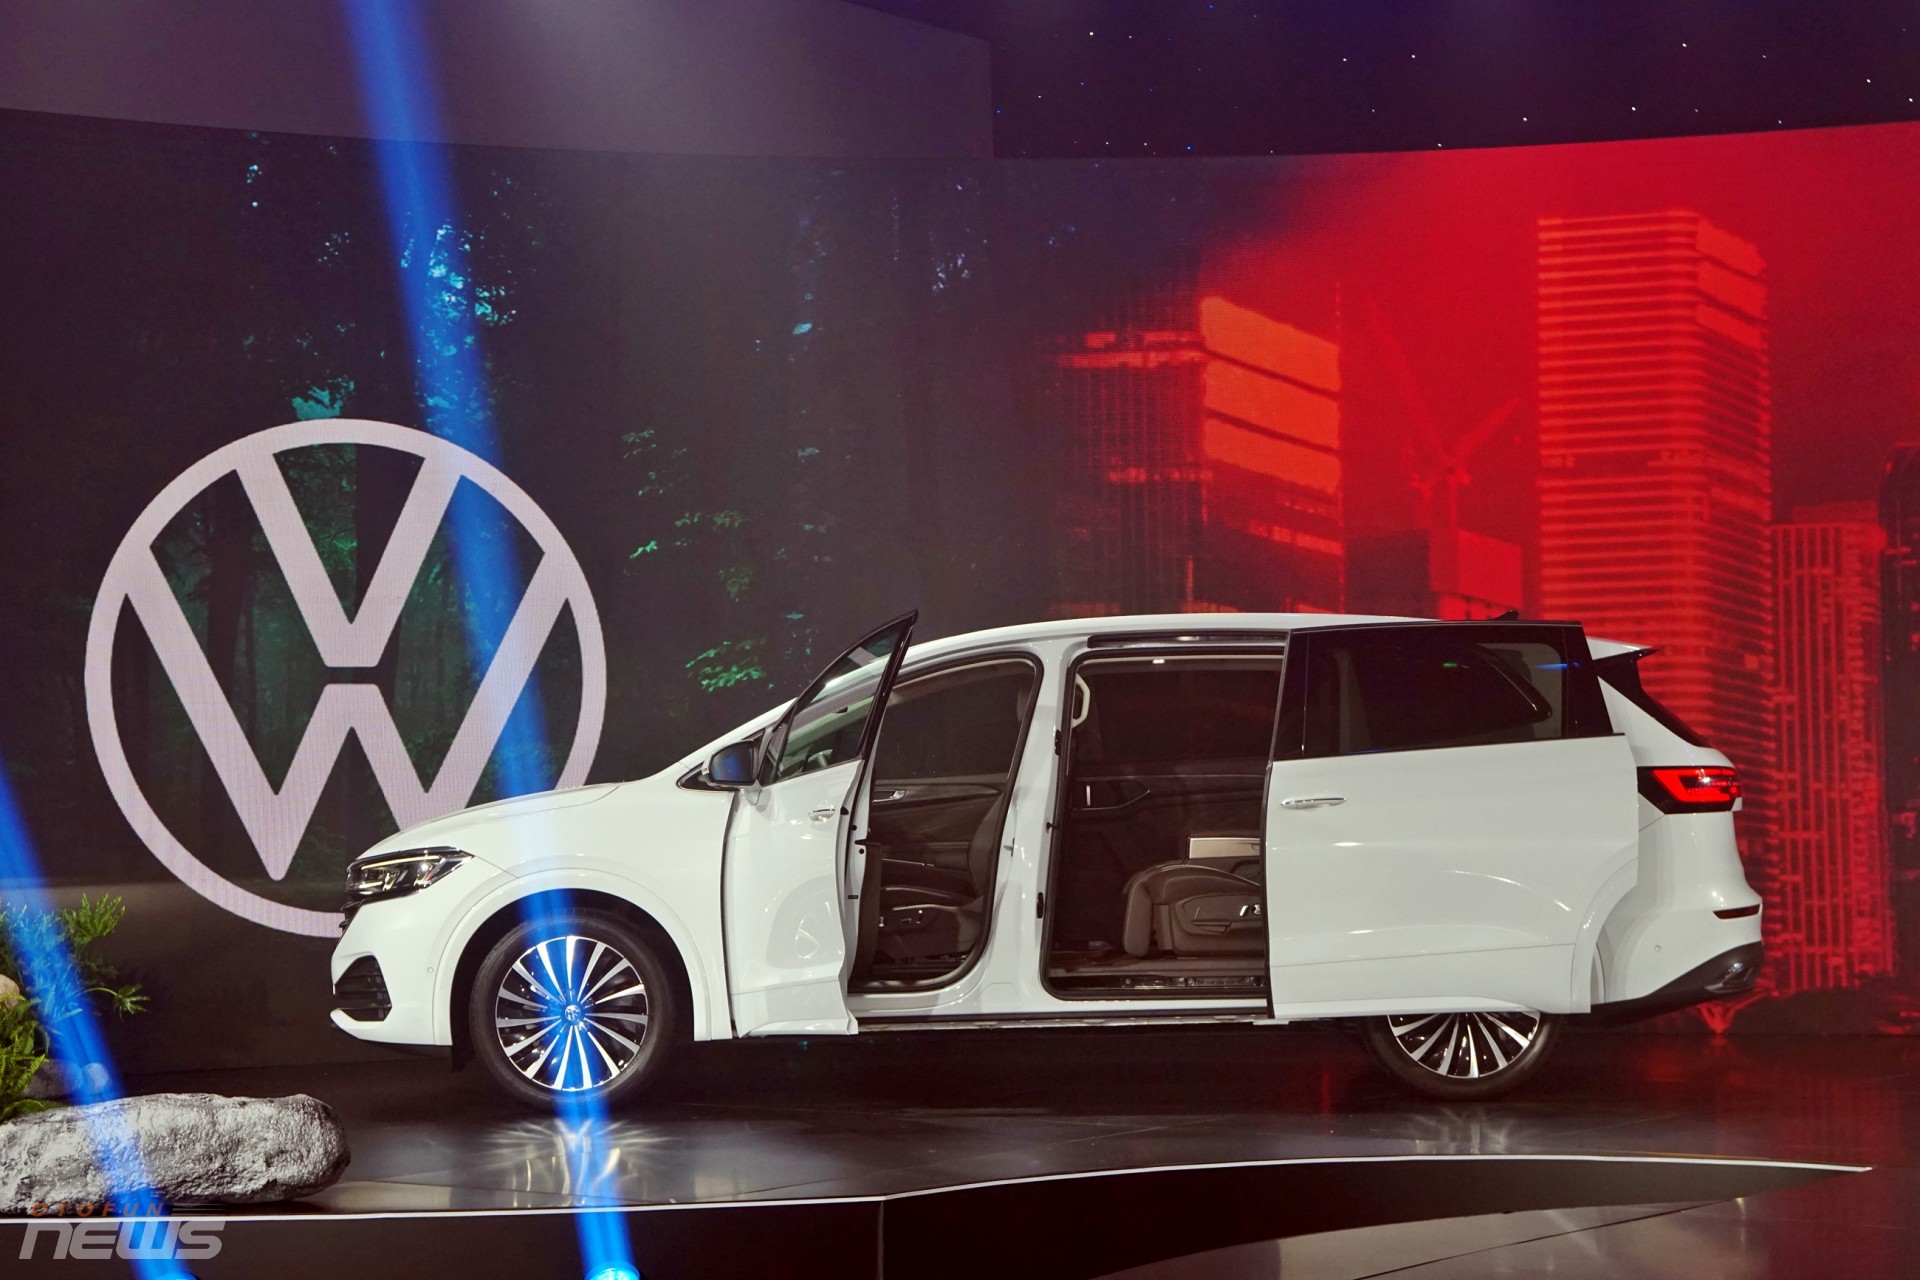 Cận cảnh Volkswagen Viloran 2024 với hàng ghế hạng thương gia vừa ra mắt tại Việt Nam